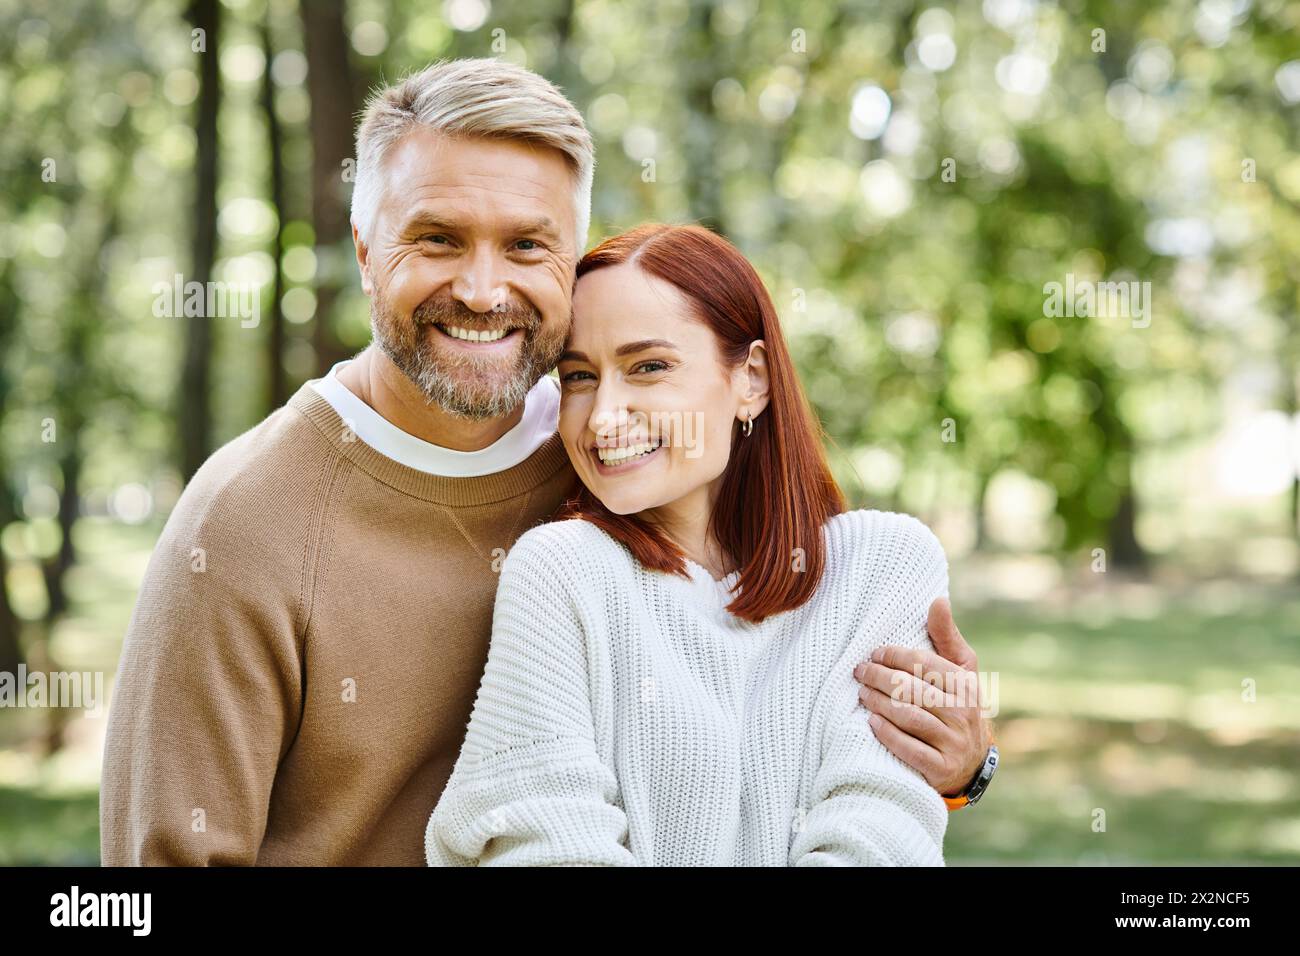 Ein Mann und eine Frau teilen ein Lächeln in einem Park. Stockfoto